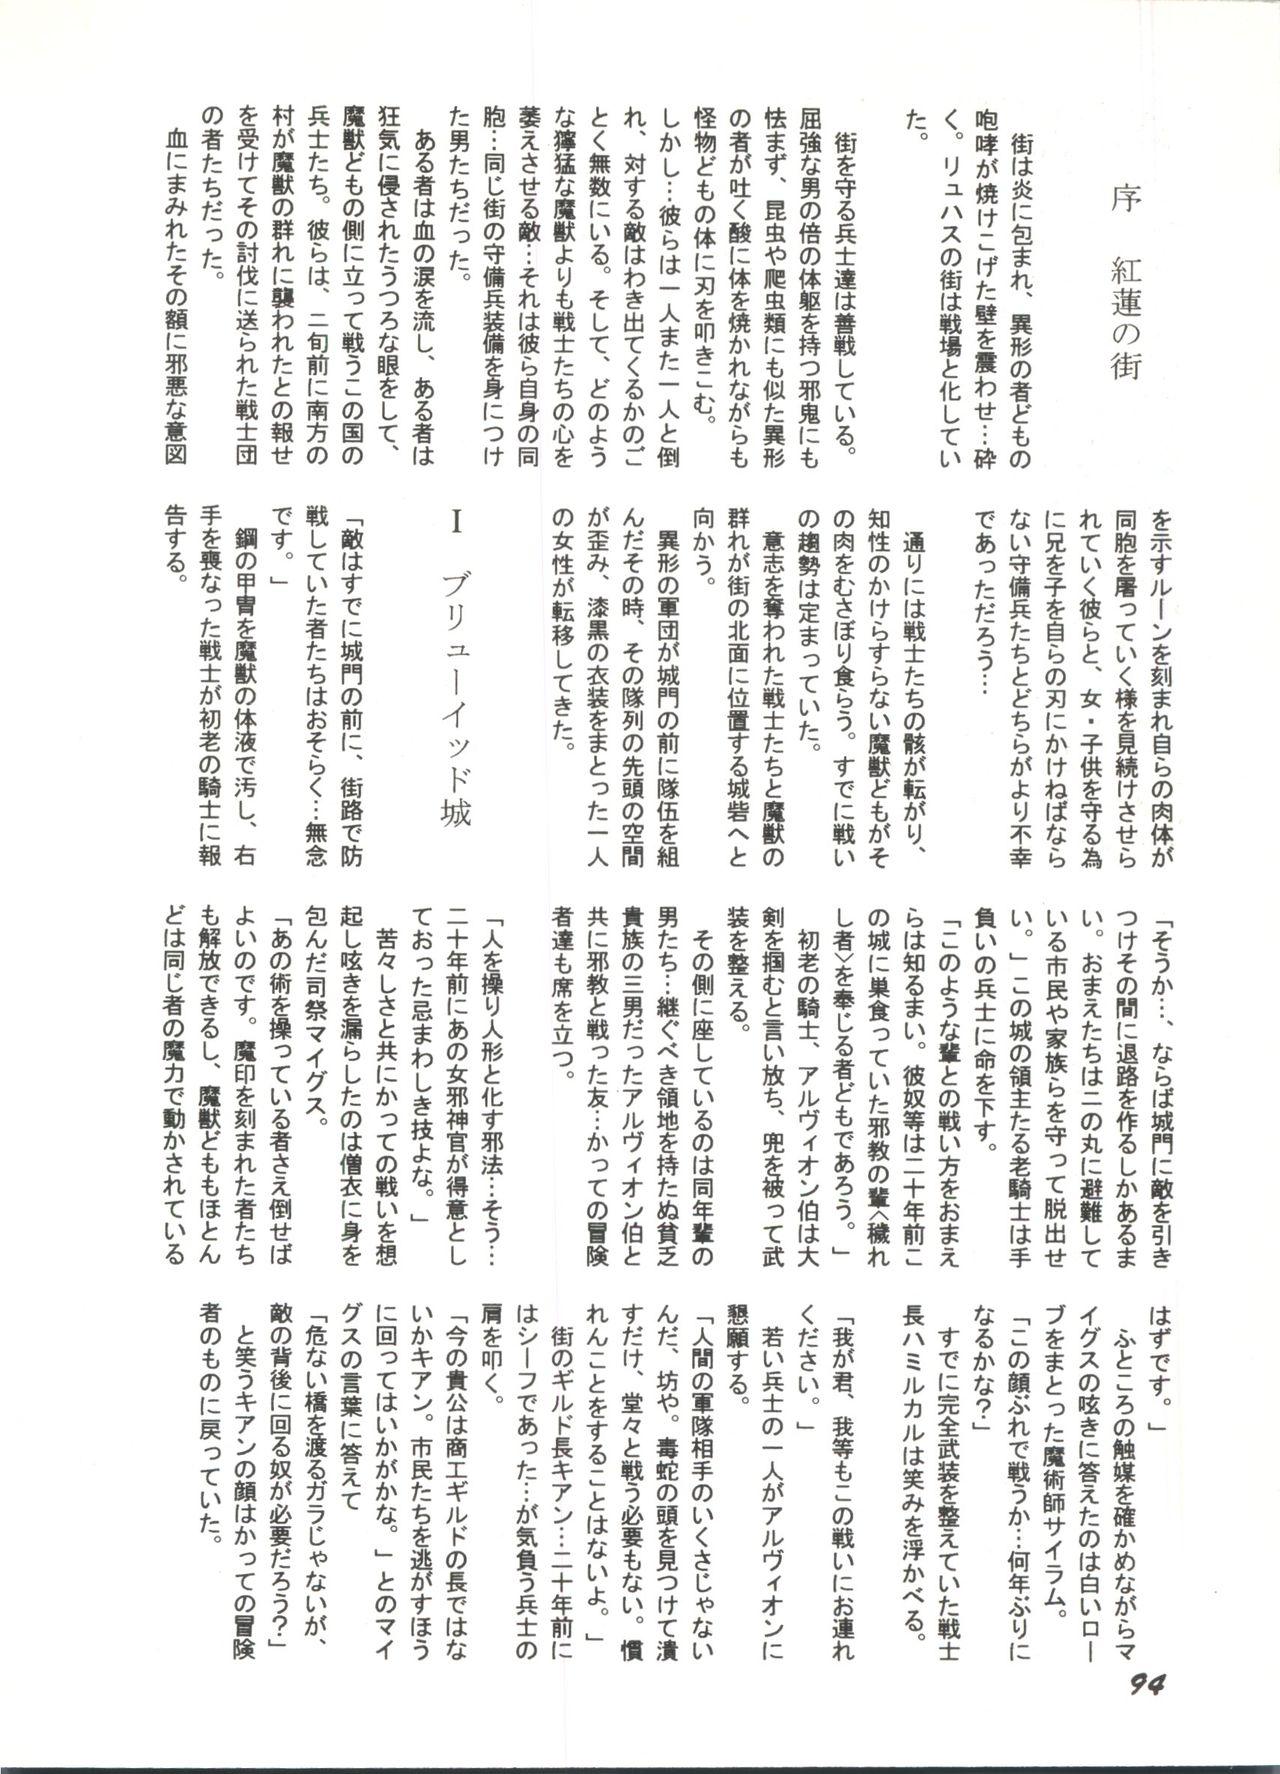 Bishoujo Doujinshi Anthology 1 95